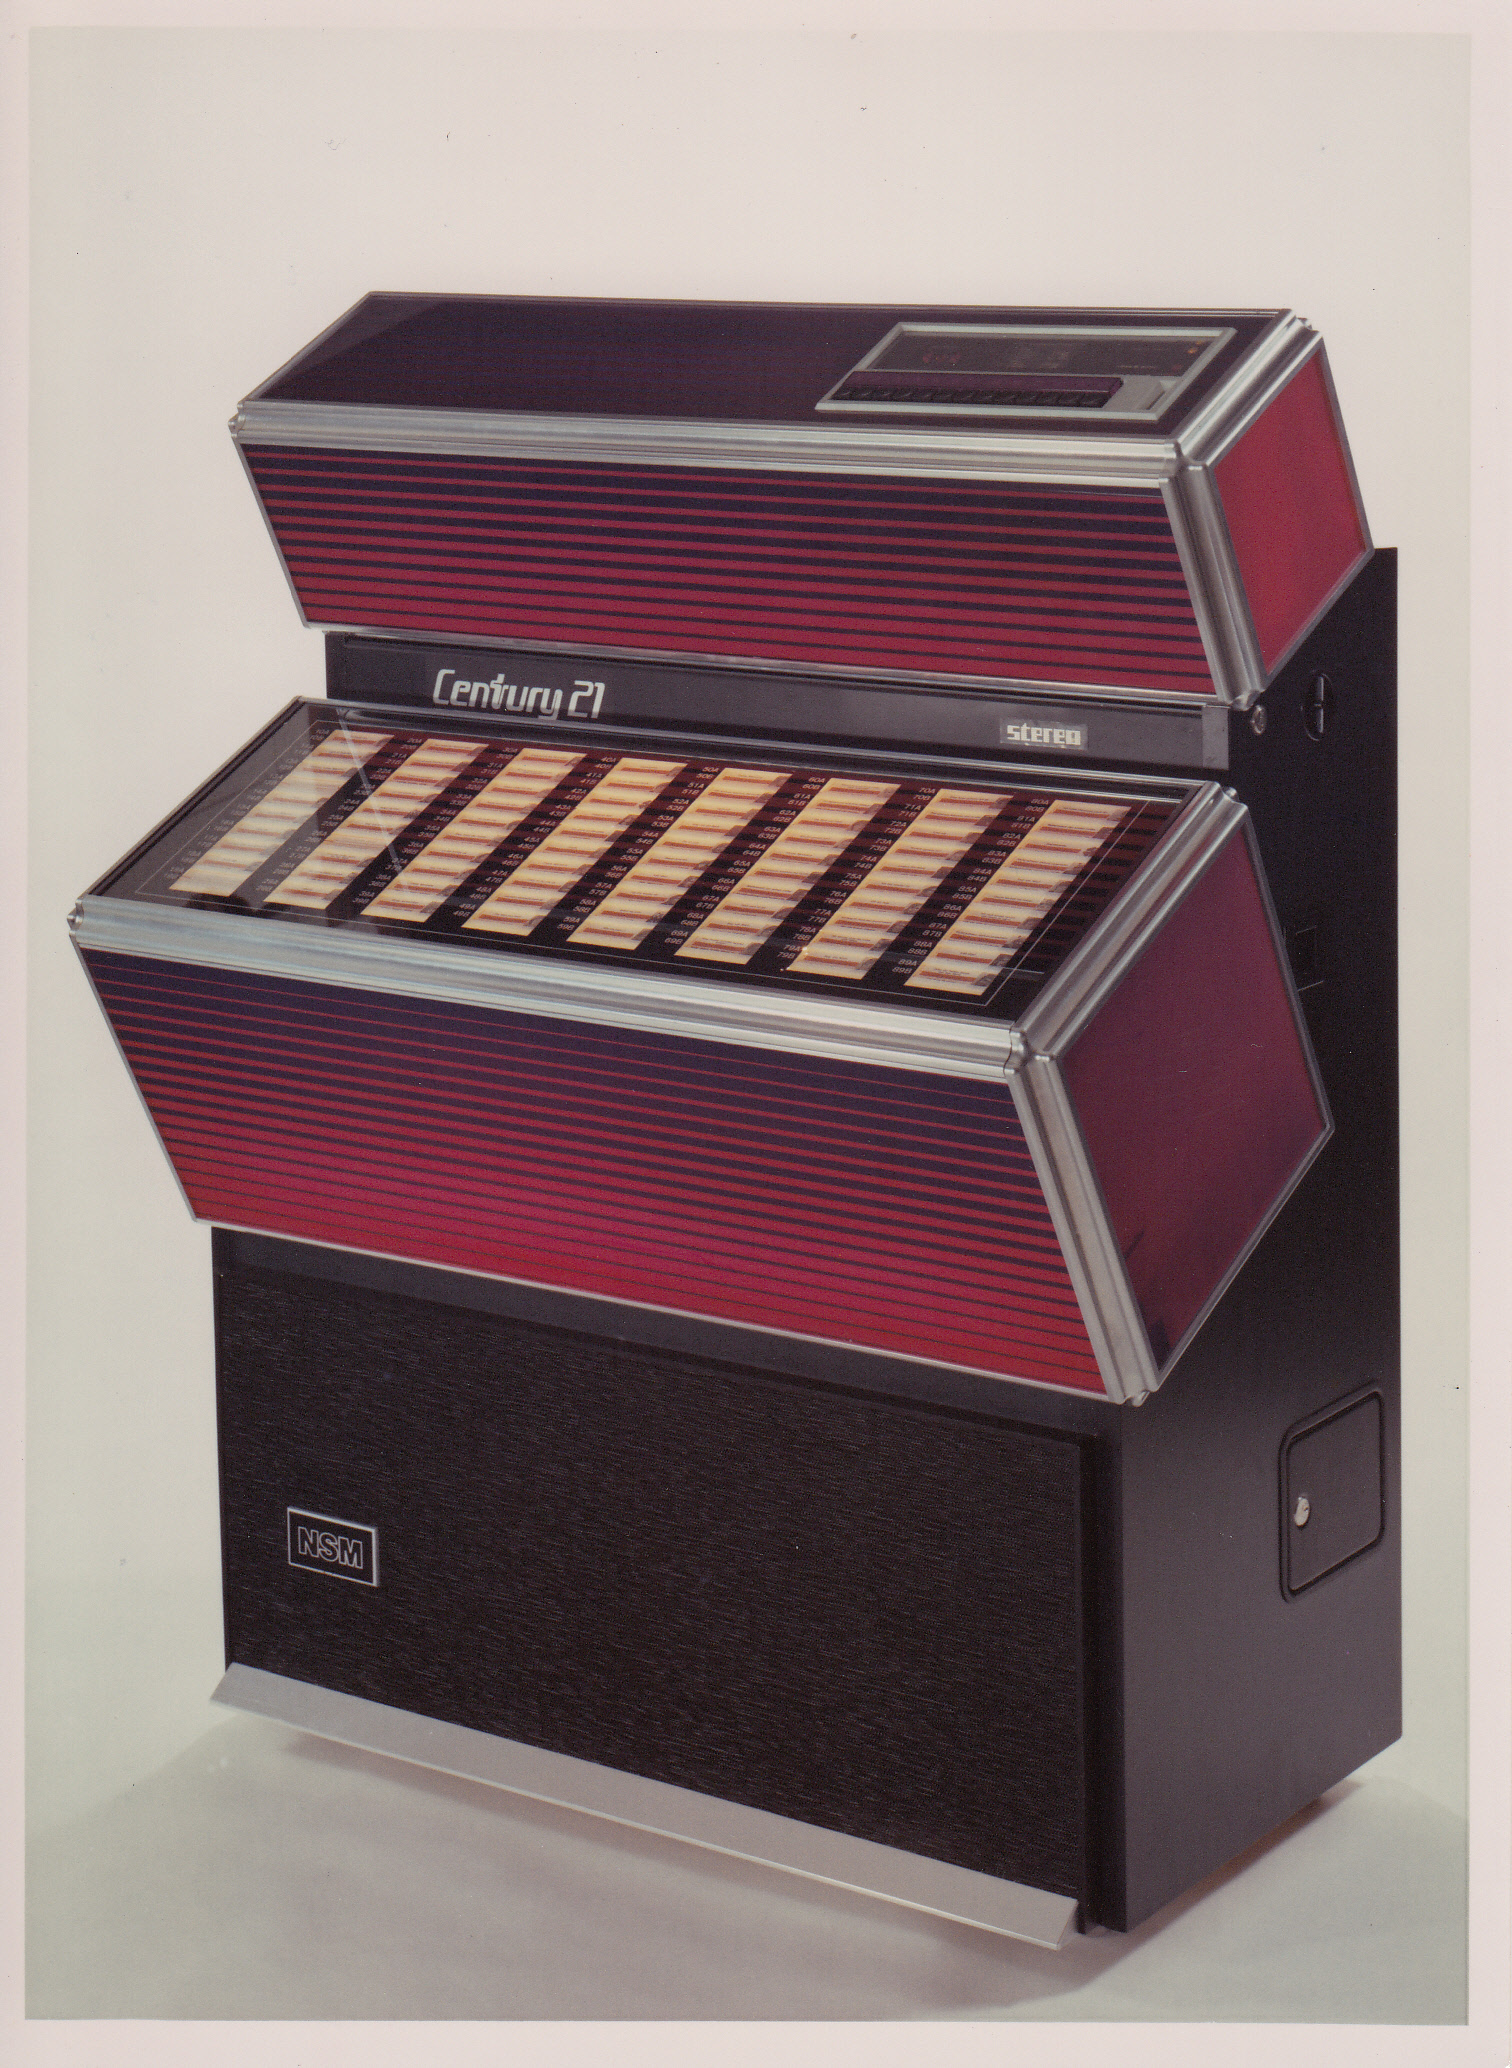 1972 retro century 21 classic jukebox